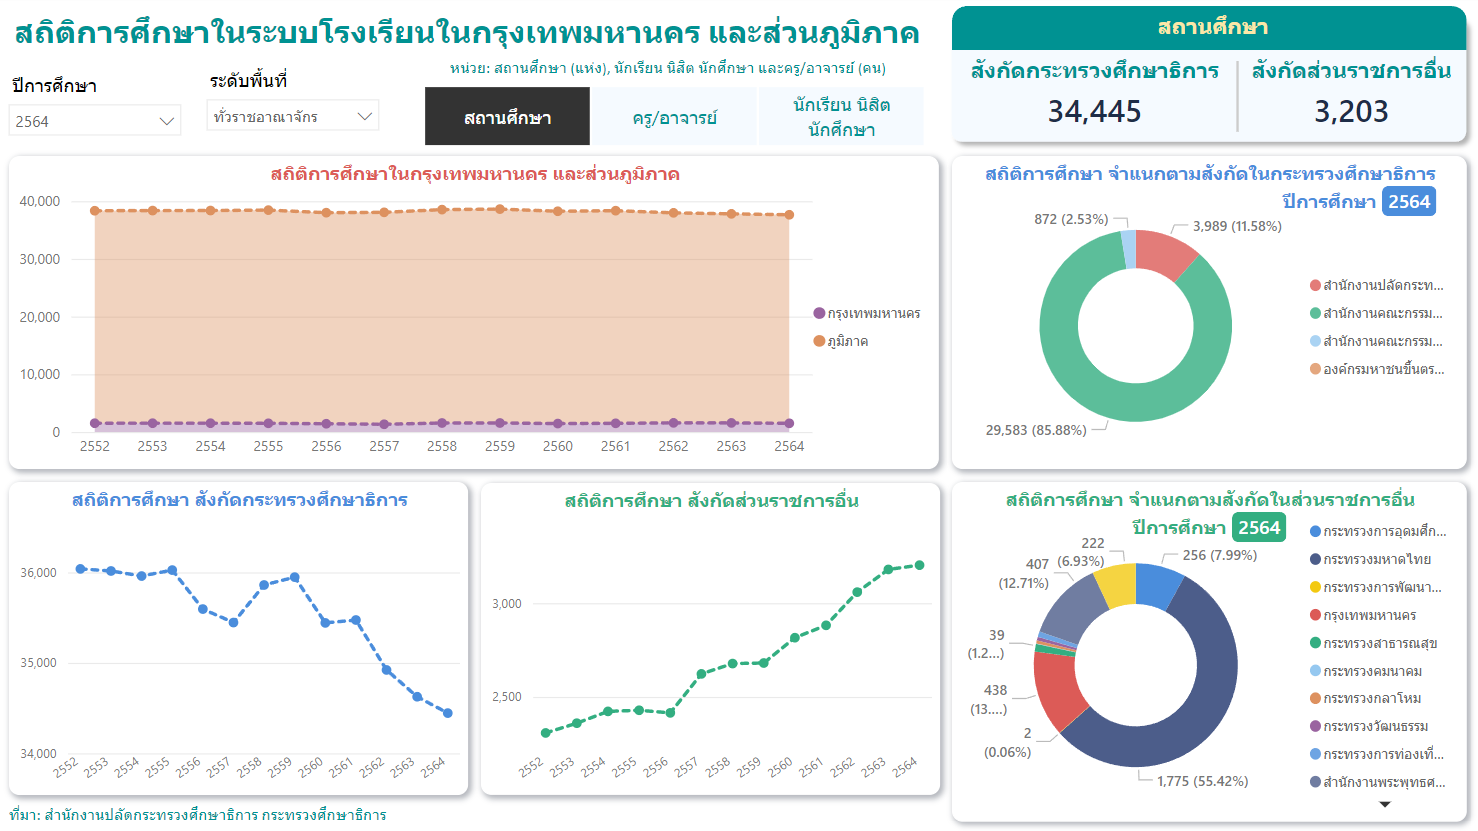 สถิติการศึกษาในระบบโรงเรียนไทย ในกรุงเทพมหานคร และส่วนภูมิภาค